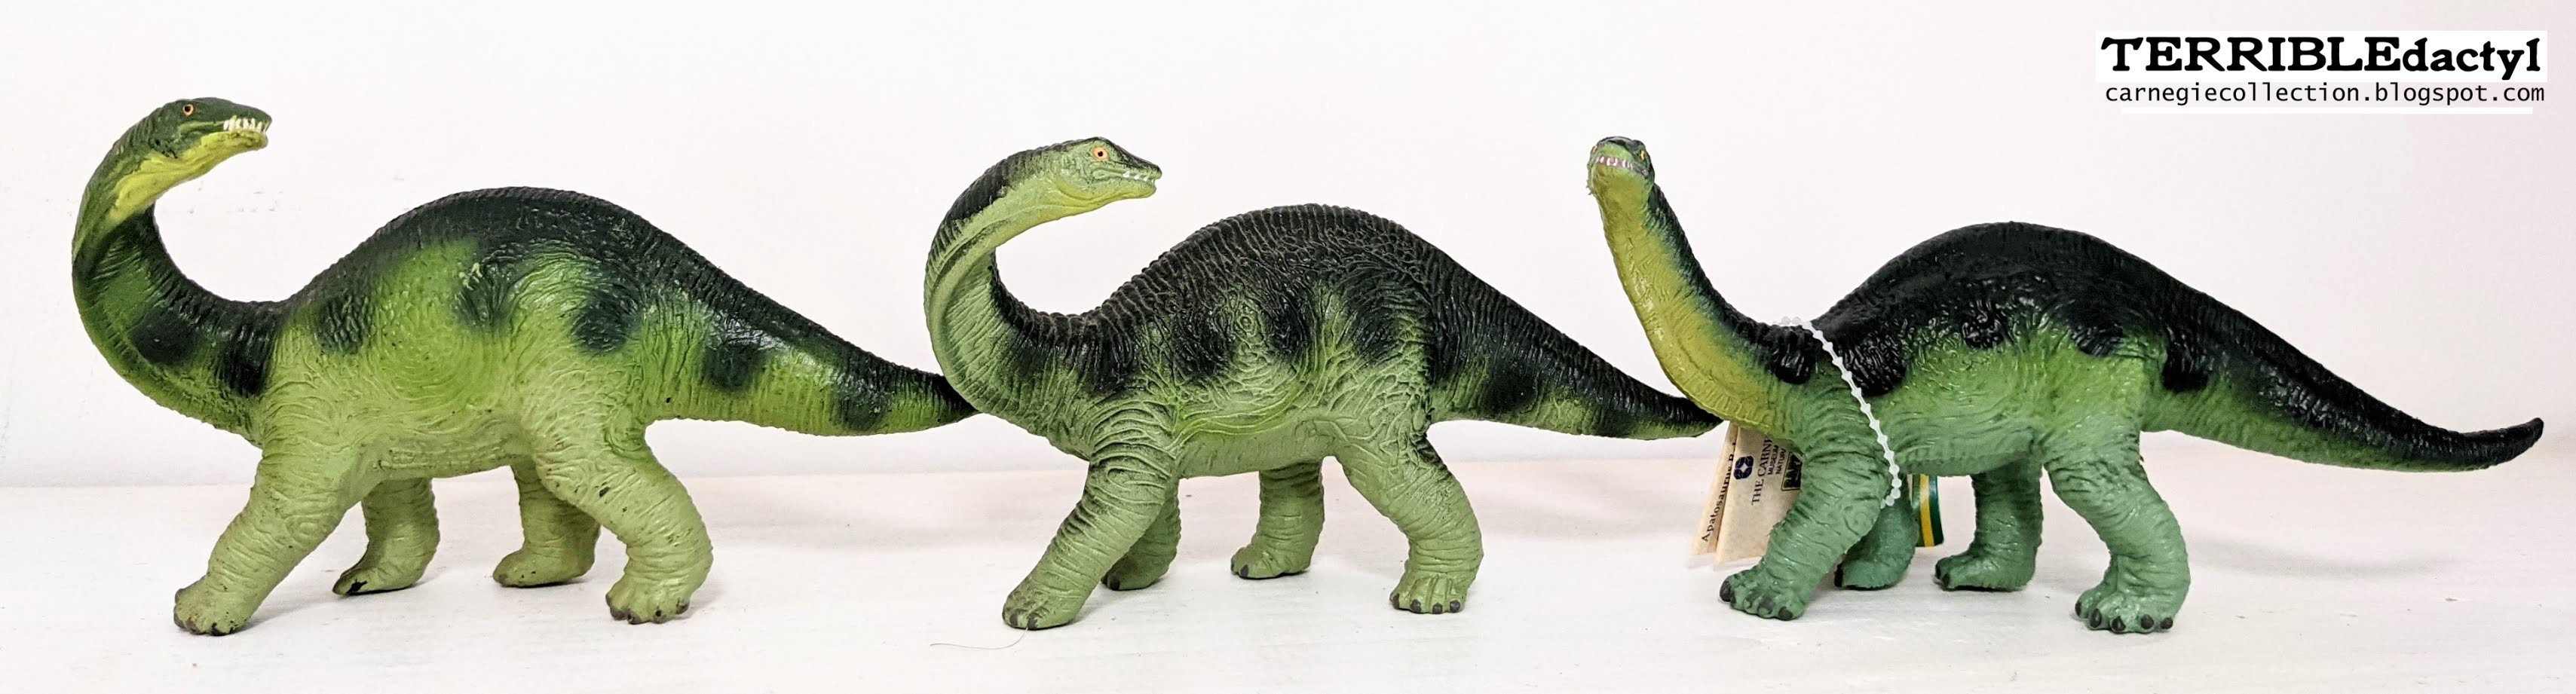 Schleich Carnegie Collection 15404 Apatosaurus Dinosaurier Safari ltd 